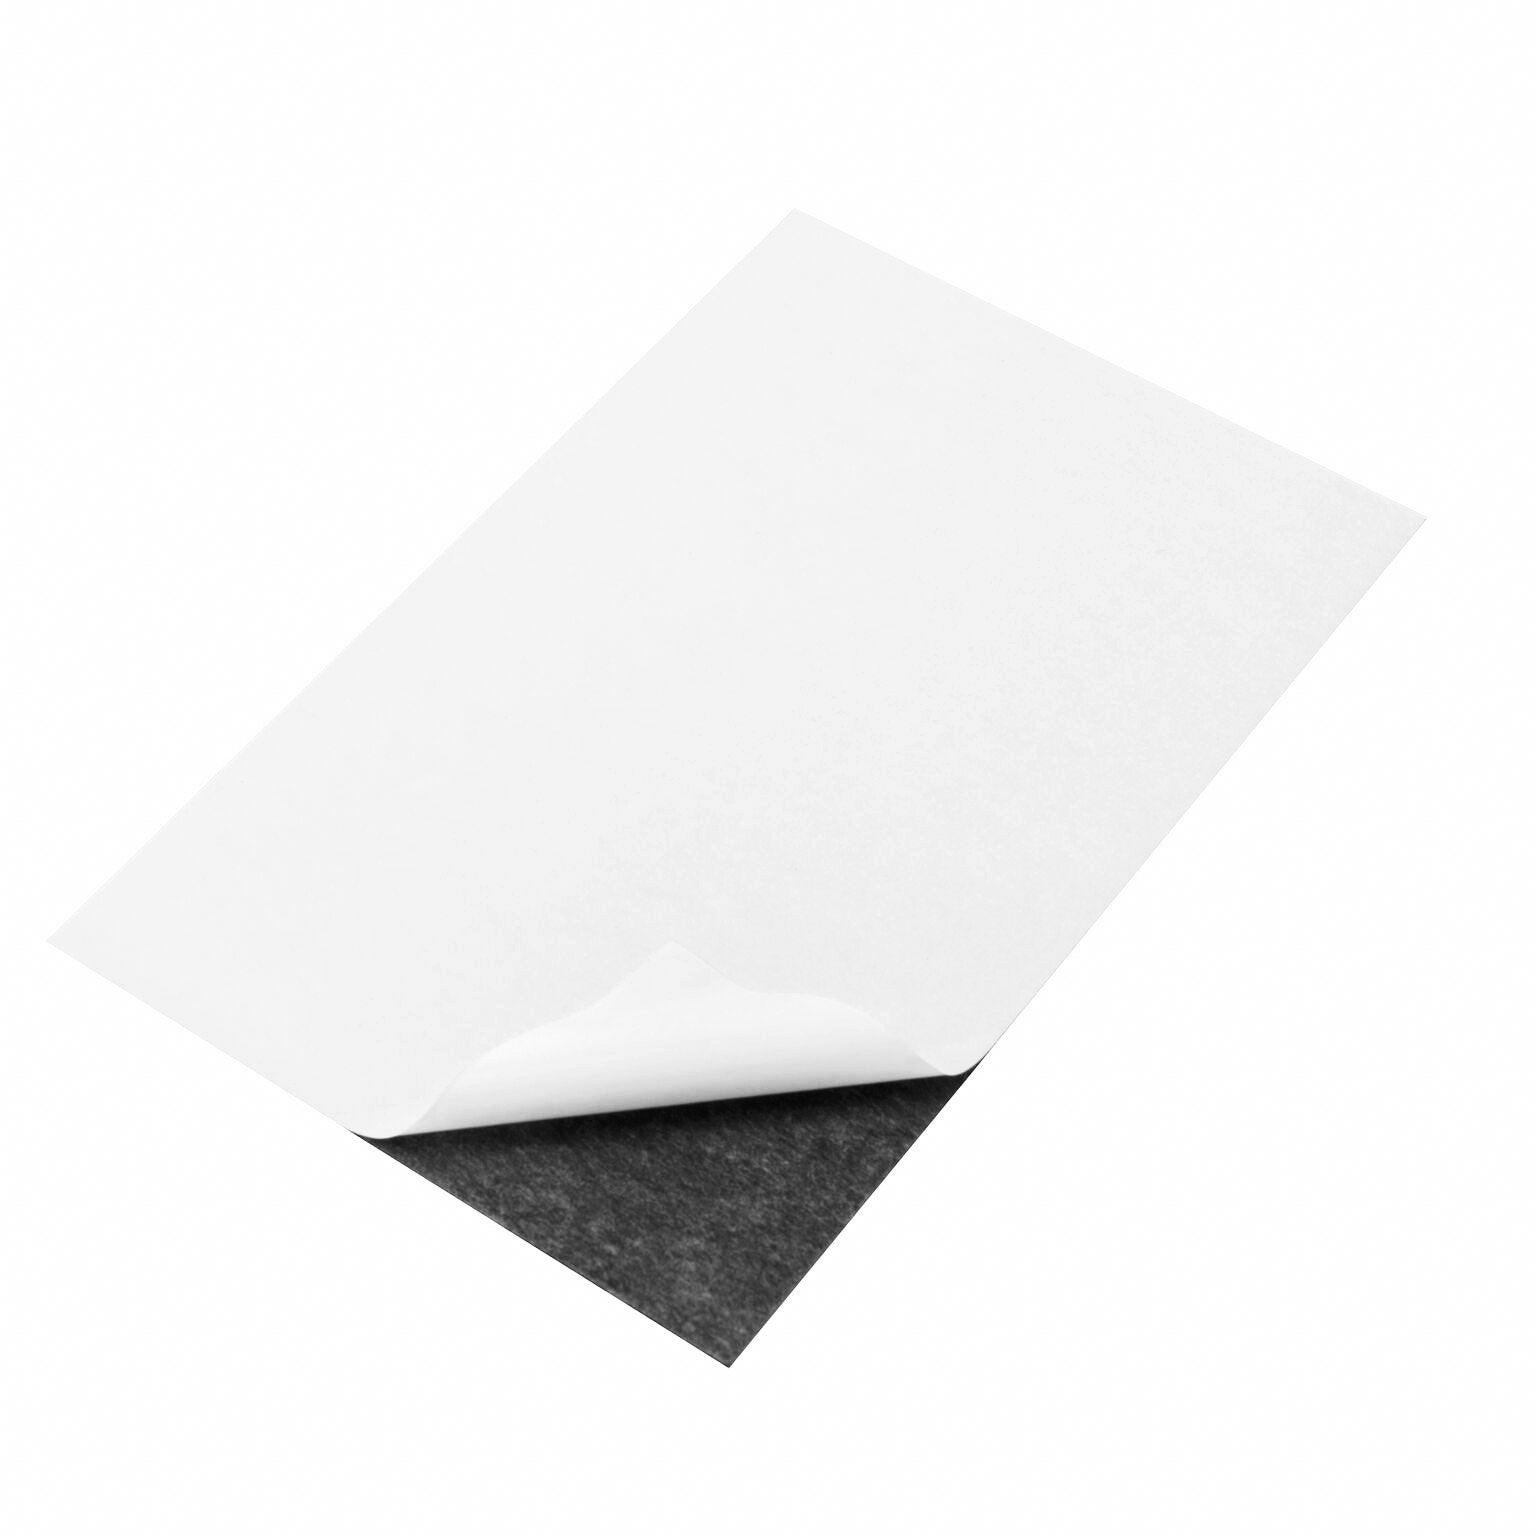 A4 White Matt Ink jet Magnetic Sheet Printable Flexible Fridge Magnet Paper